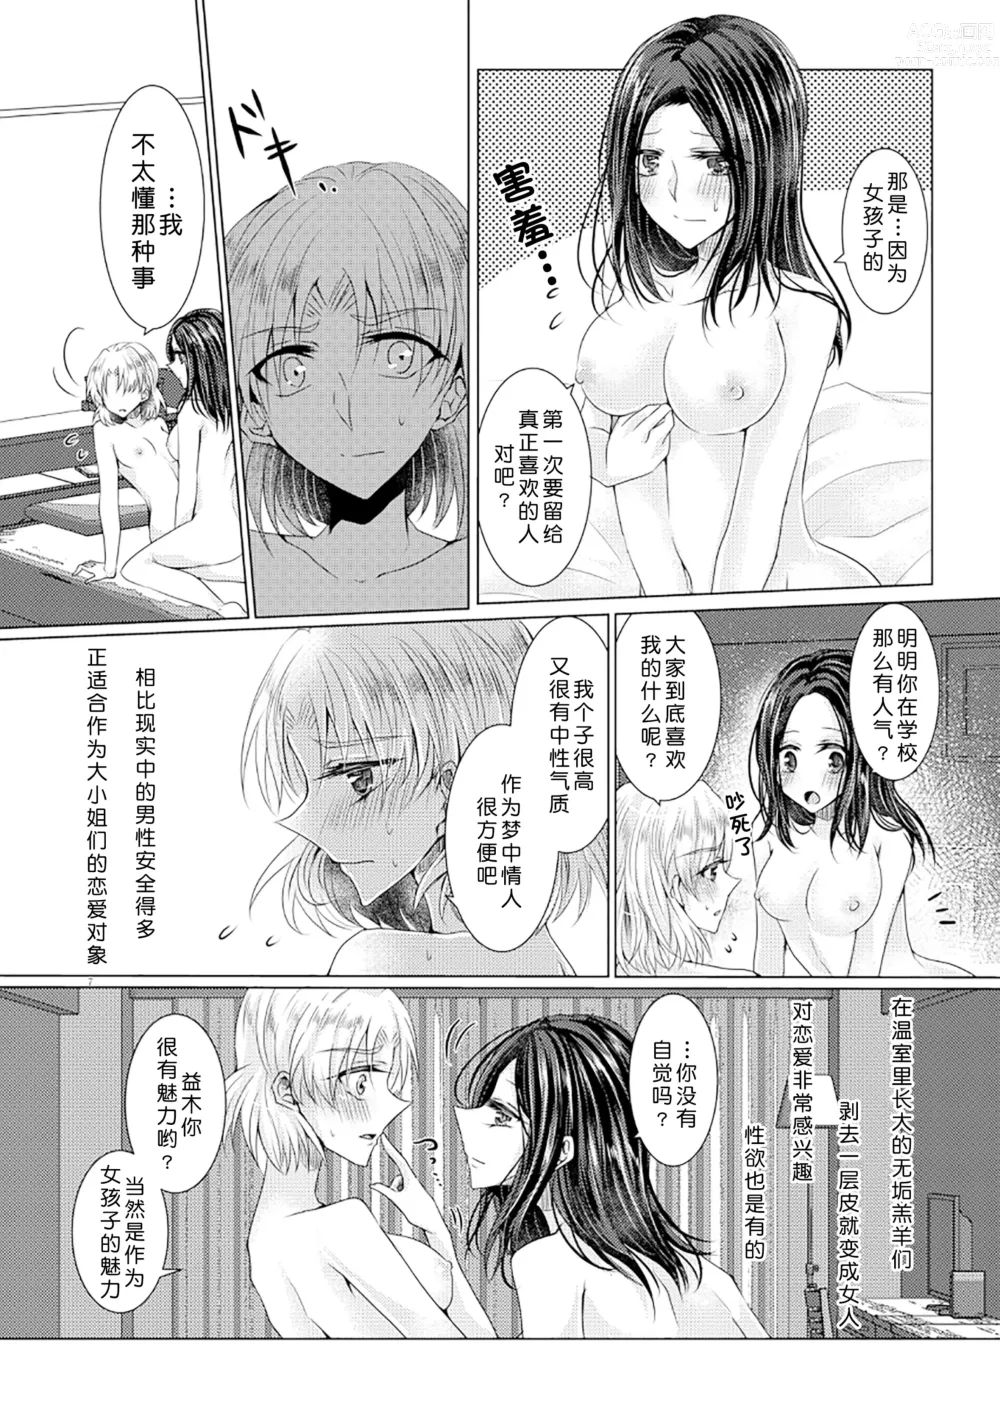 Page 6 of doujinshi 倒错罗曼司